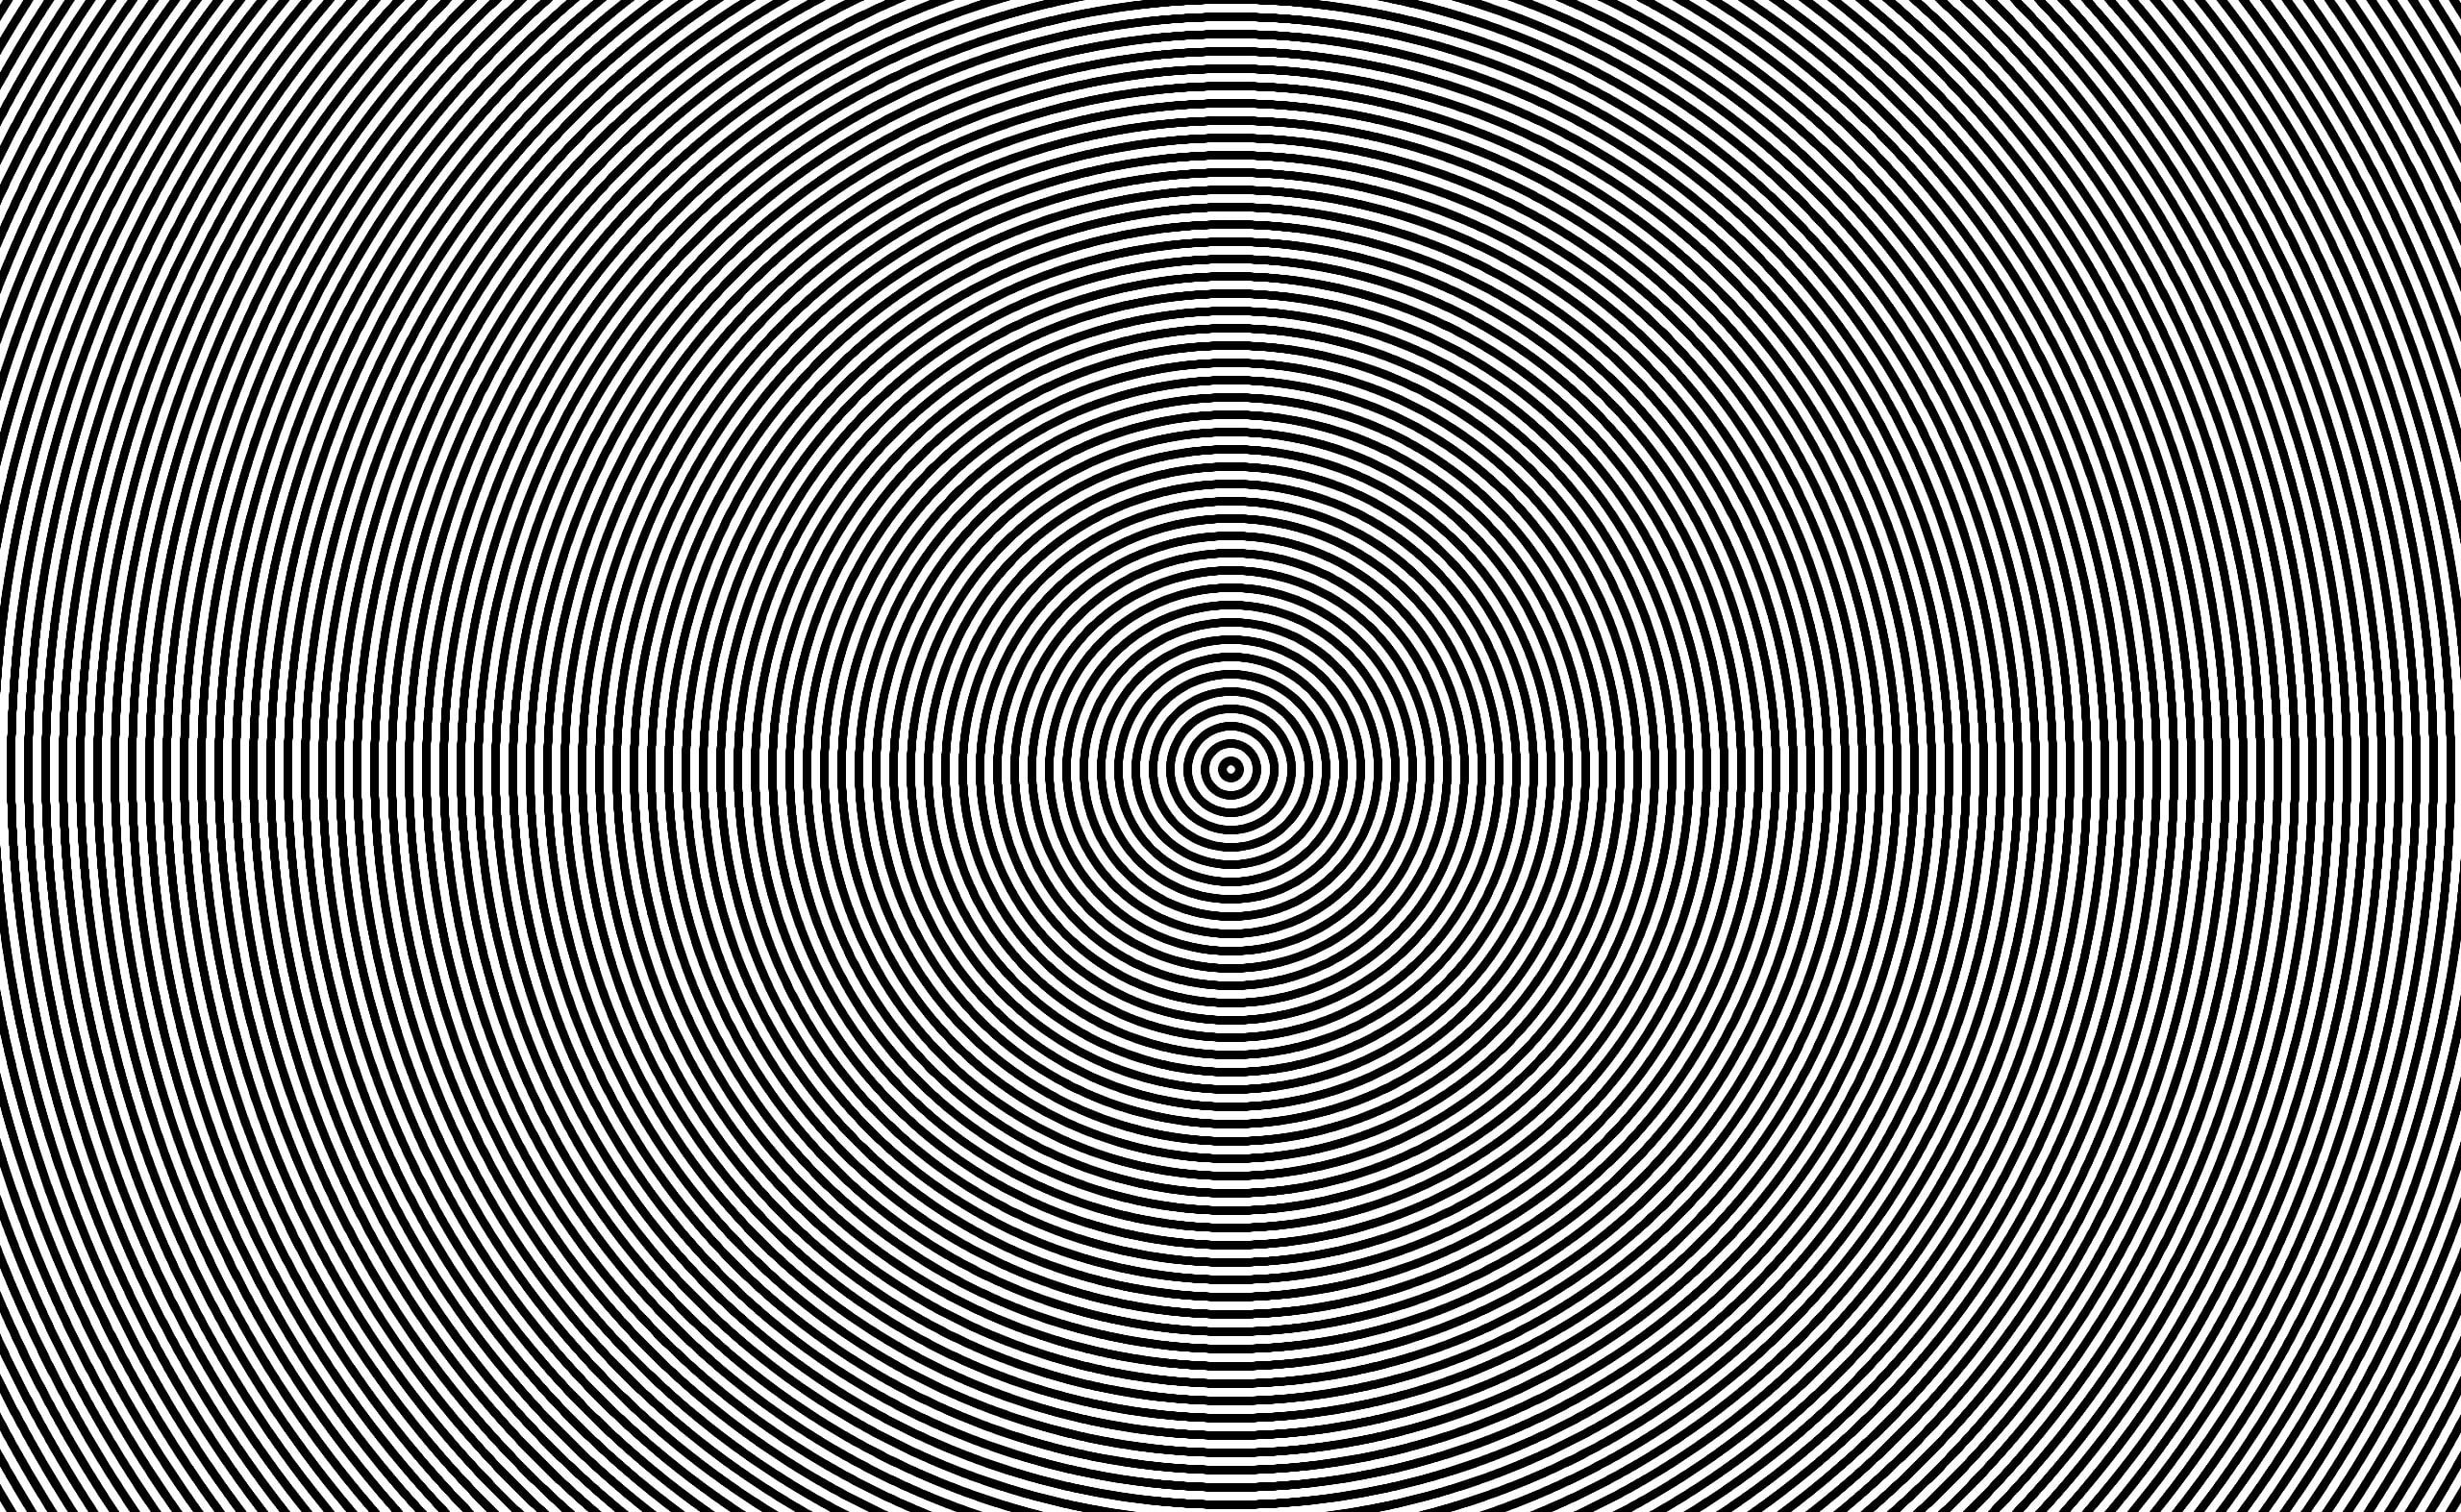 Dont Look At It, gray optical illusion, Aero, Creative, Circles